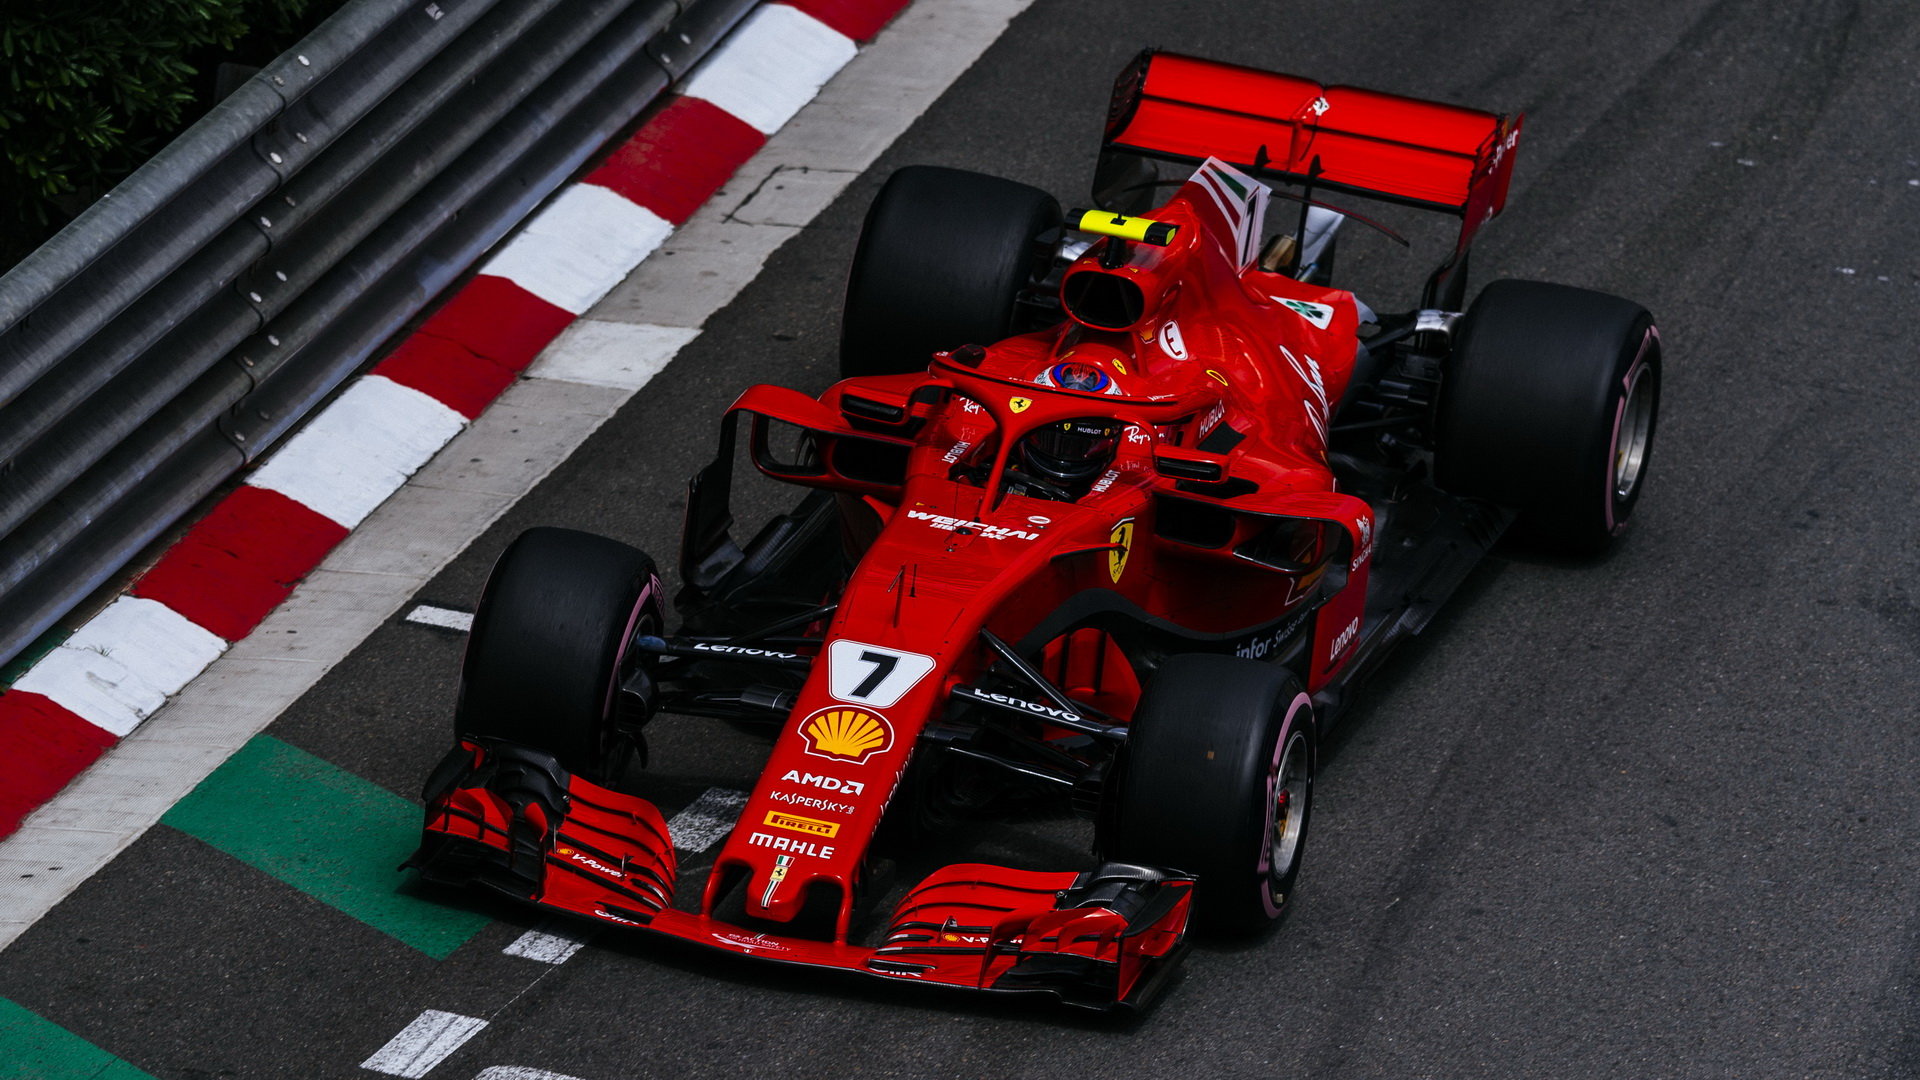 I nové zavěšení pomohlo Ferrari porazit Mercedes v dnešní kvalifikaci